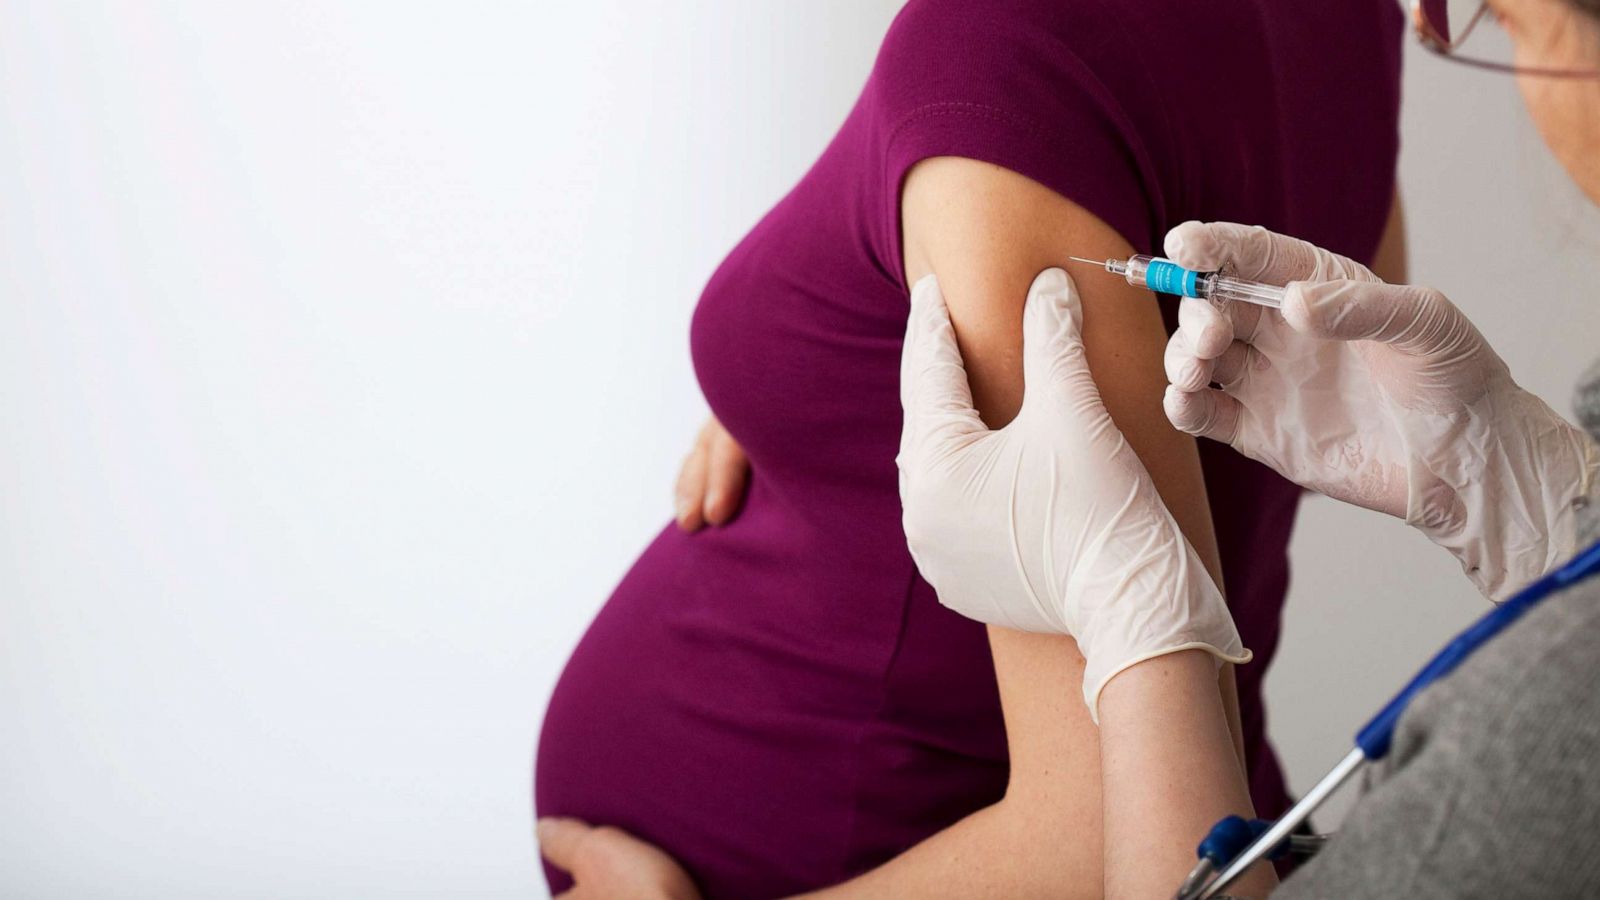 Tổng hợp 13 câu hỏi về tiêm phòng cúm khi mang thai